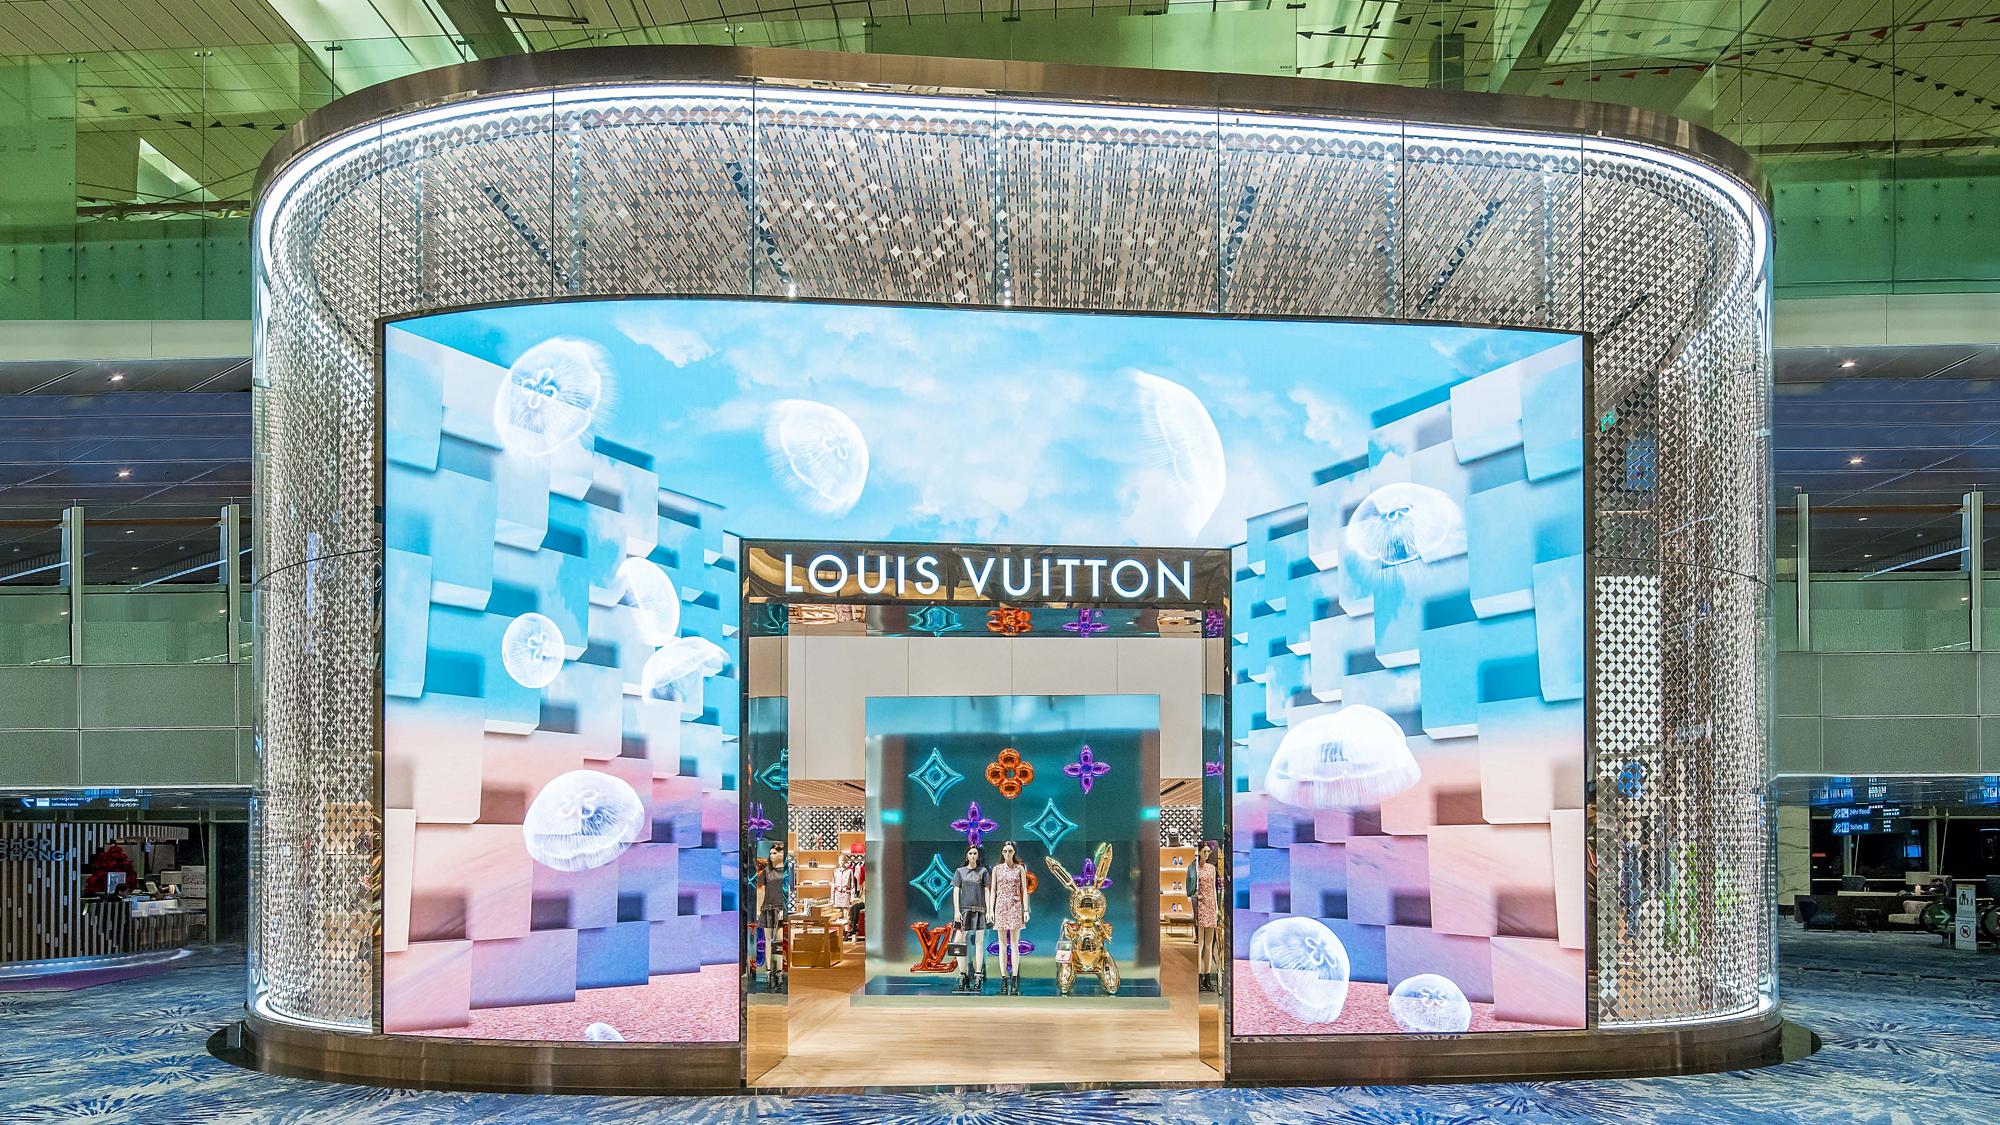 Louis Vuitton Bangkok Suvarnabhumi Airport store, Thailand